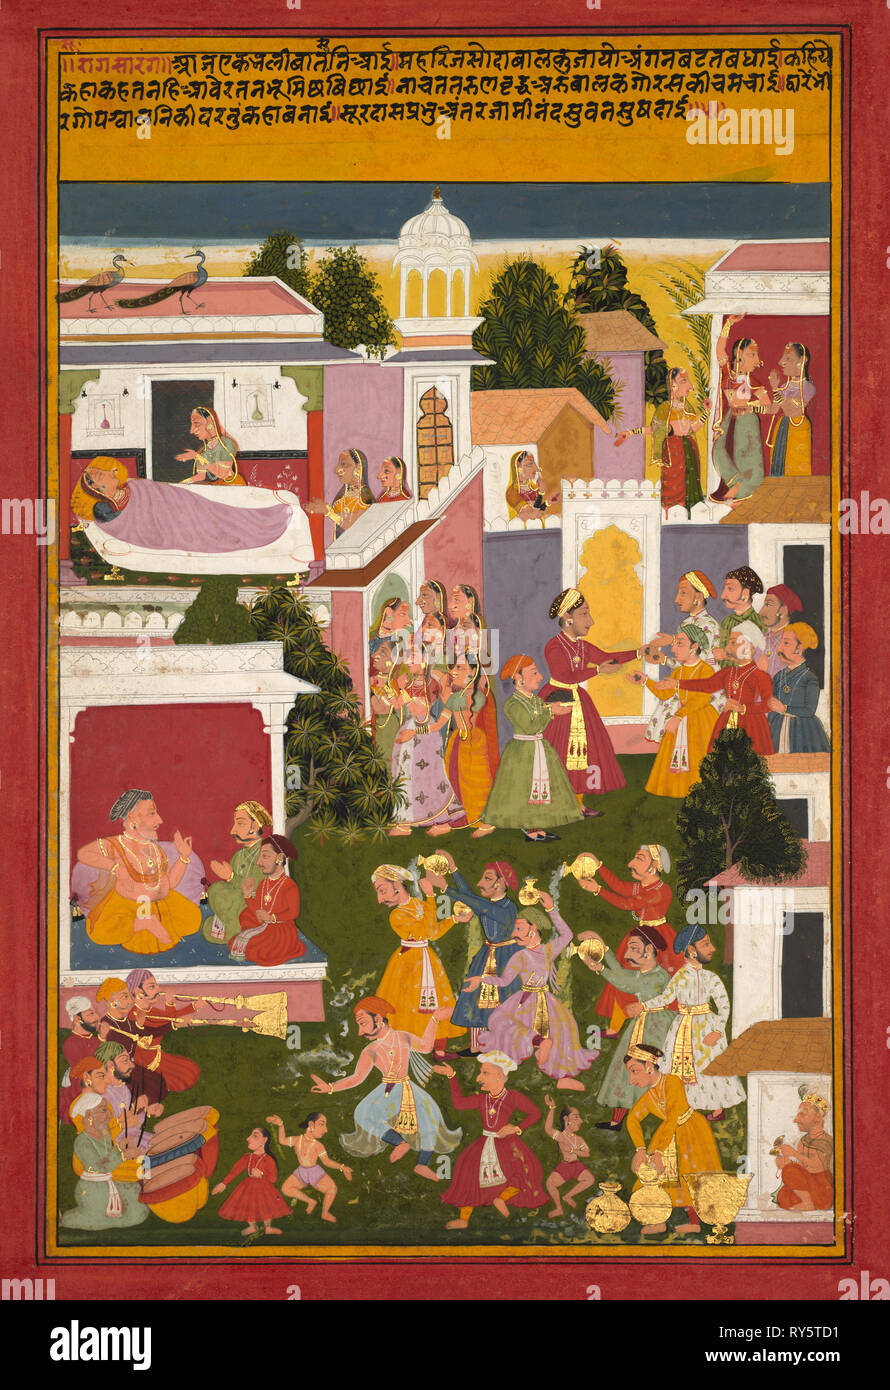 Die Geburt von Krishna, aus einem Sursagar der Surdas, C. 1700. Nordwestliche Indien, Rajasthan, Mewar Schule, Anfang des 18. Jahrhunderts. Opak Aquarell und Gold auf Papier; Bild: 33,6 x 22,2 cm (13 1/4 x 8 3/4 in.); insgesamt: 37 x 25,4 cm (14 9/16 x 10 in.); mit Matte: 49 x 36,3 cm (19 5/16 x 14 5/16 Zoll Stockfoto